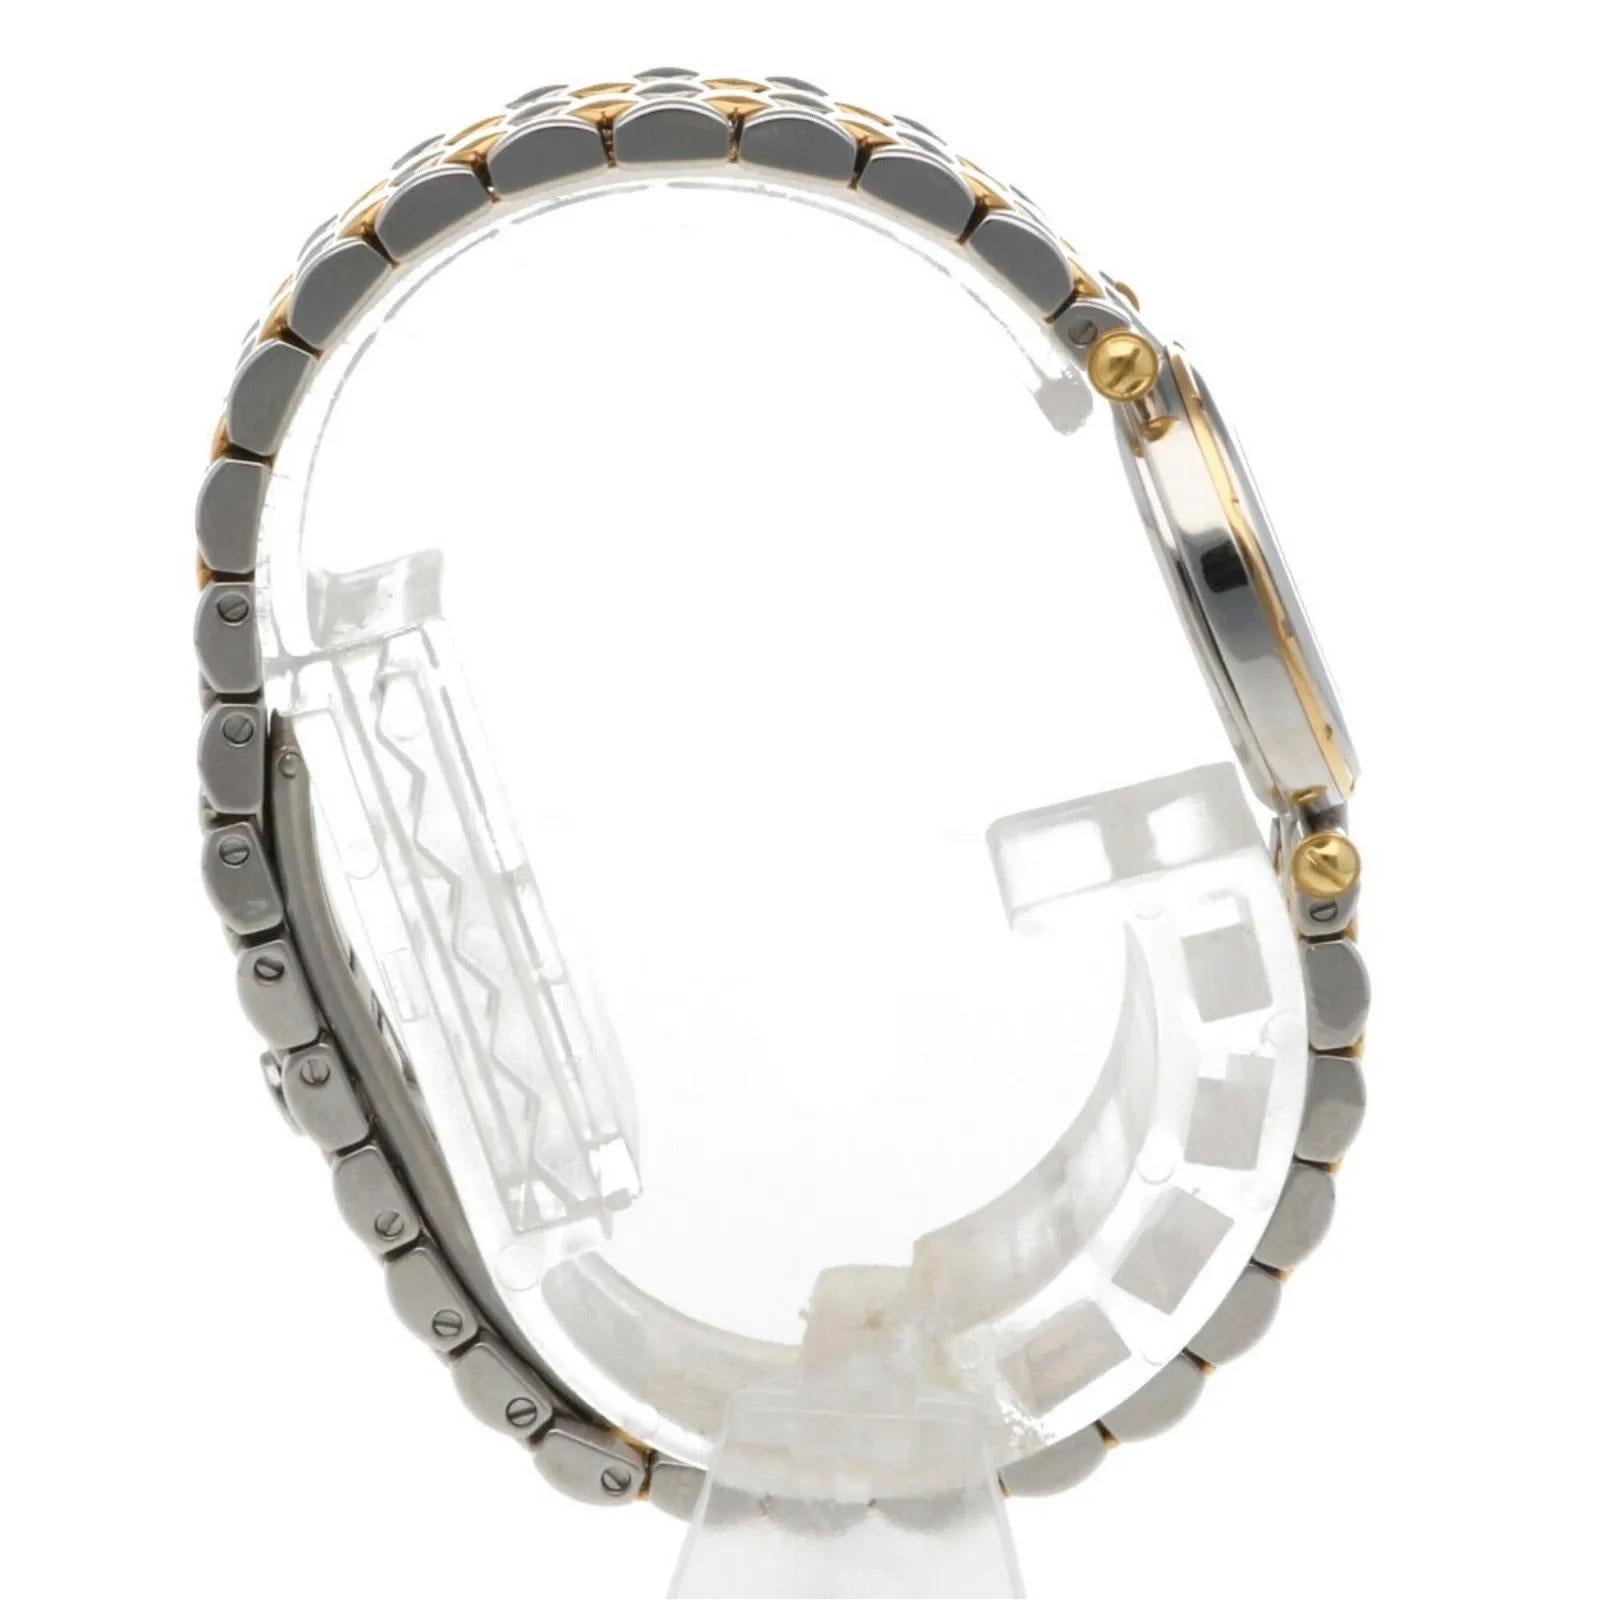  Van Cleef & Arpels Montre-bracelet La Collection 31 mm en or 18 carats et acier inoxydable,8950 $ Unisexe 